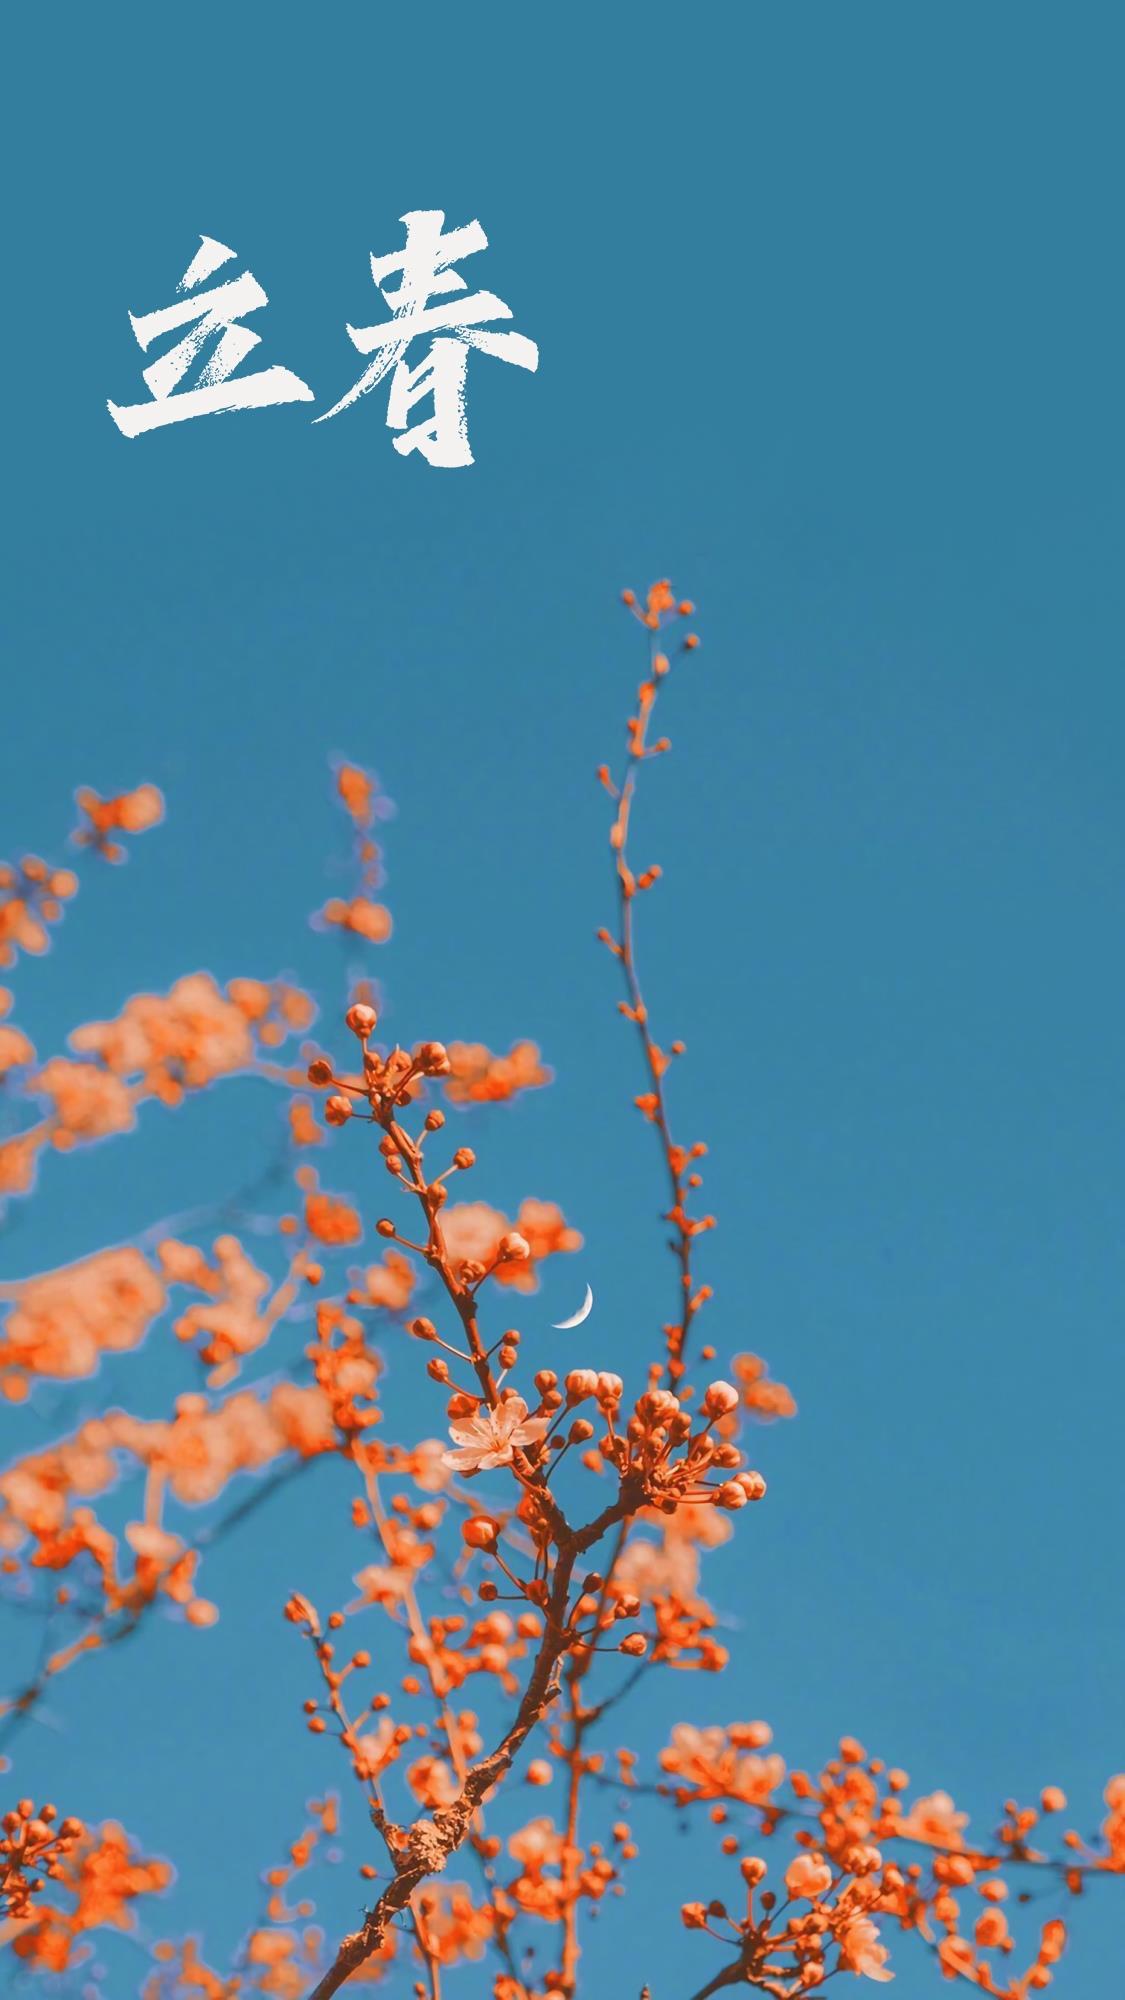 立春时节之花朵手机壁纸图片